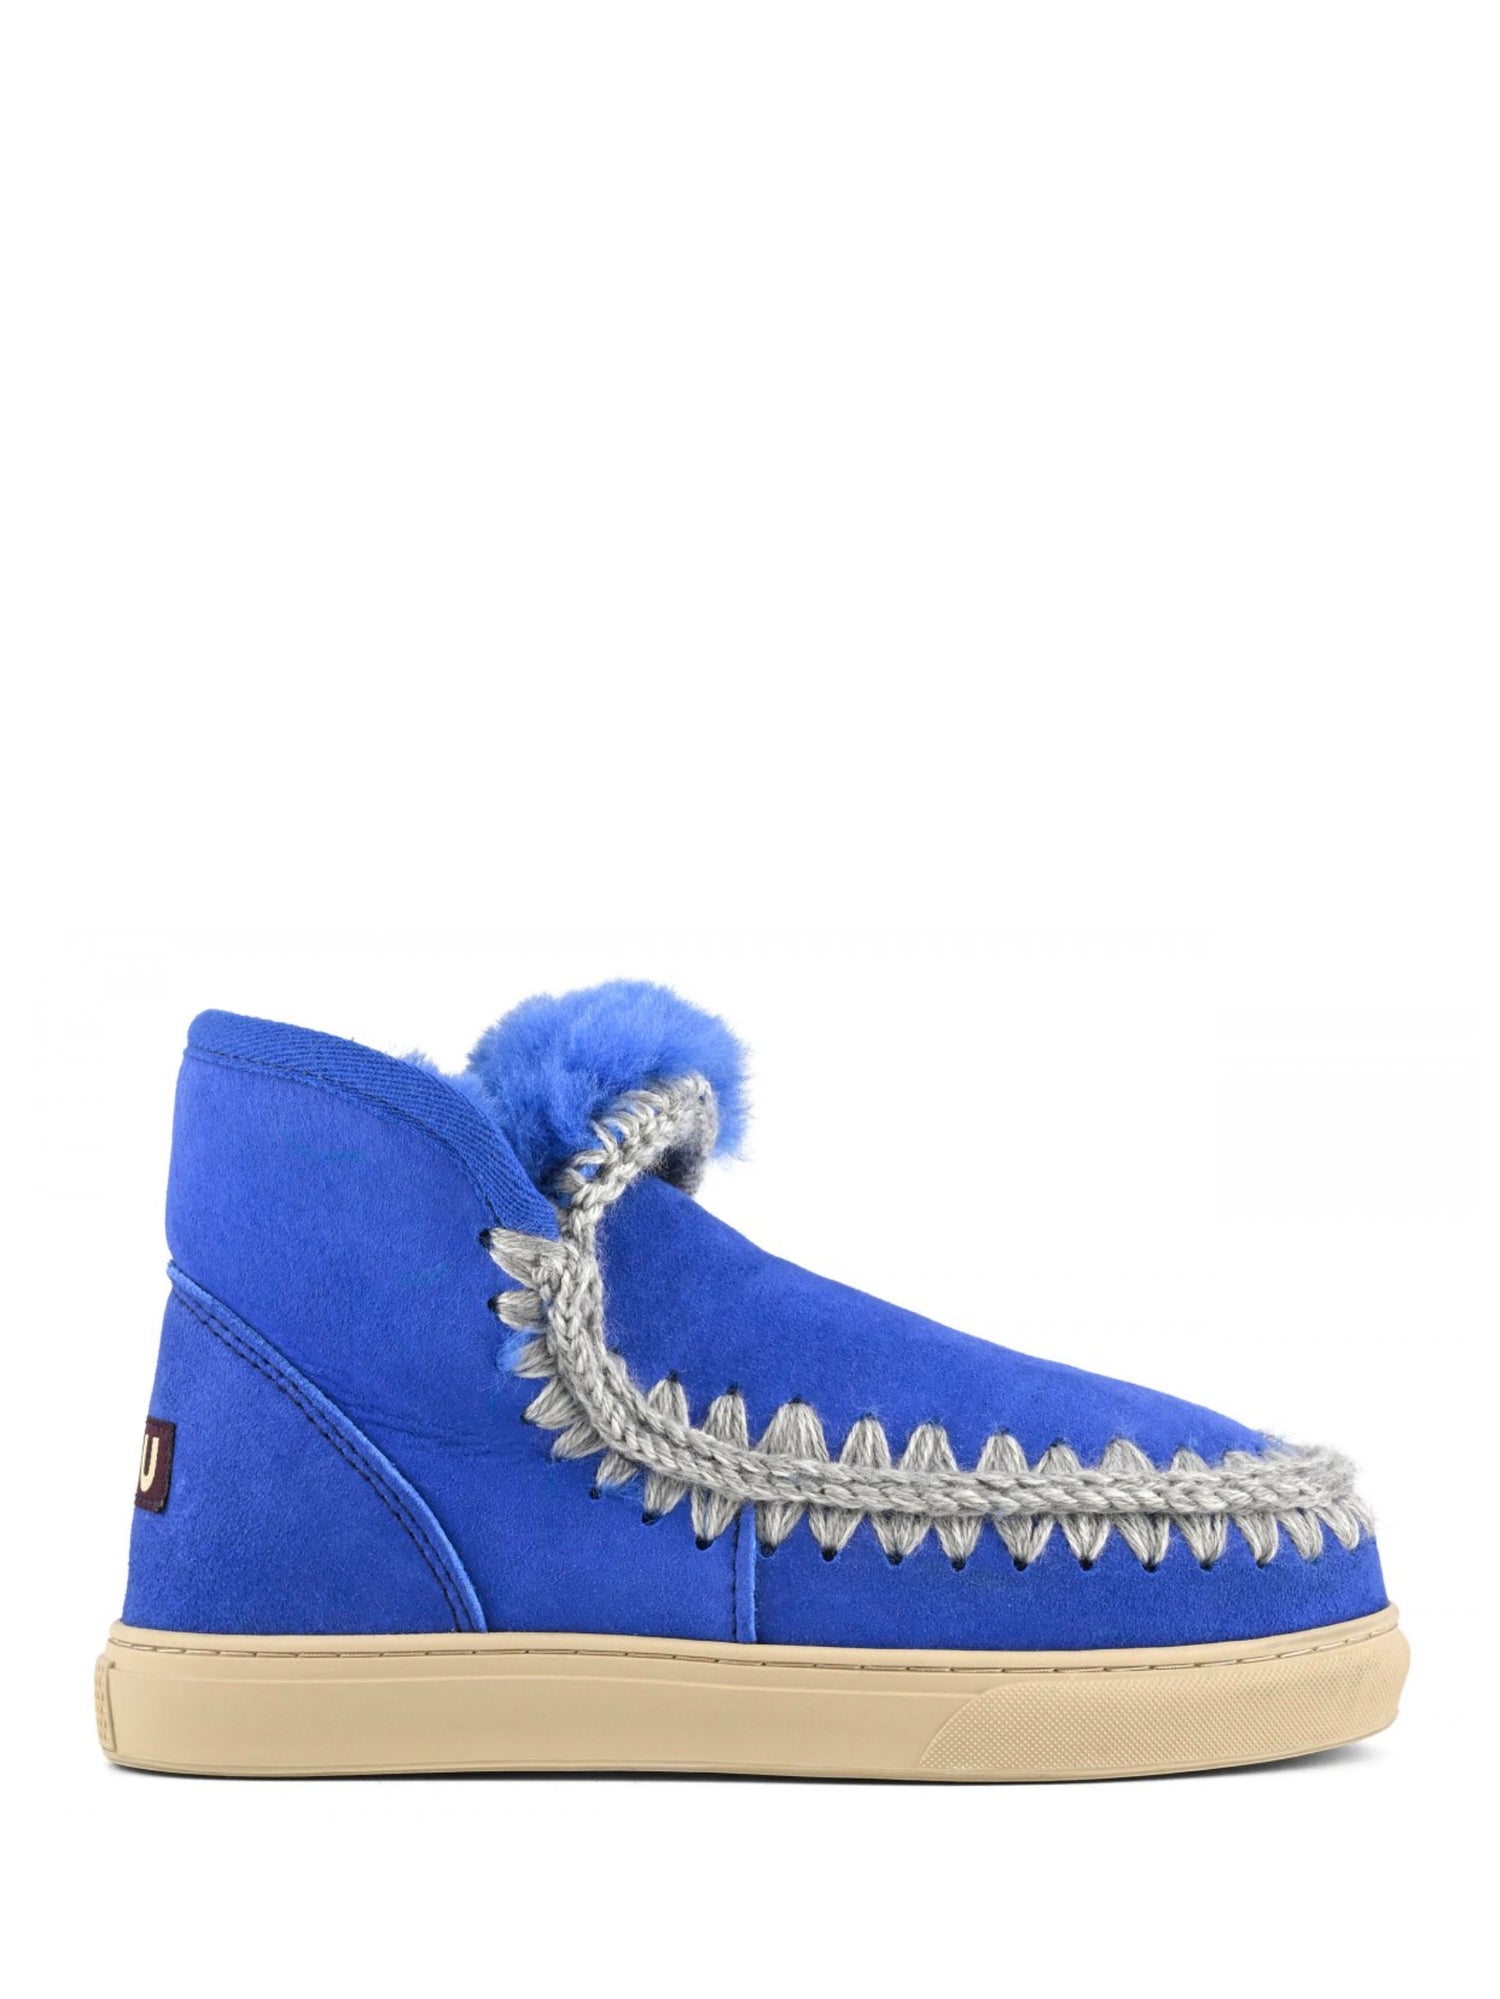 Eskimo sneaker boots, bright blue